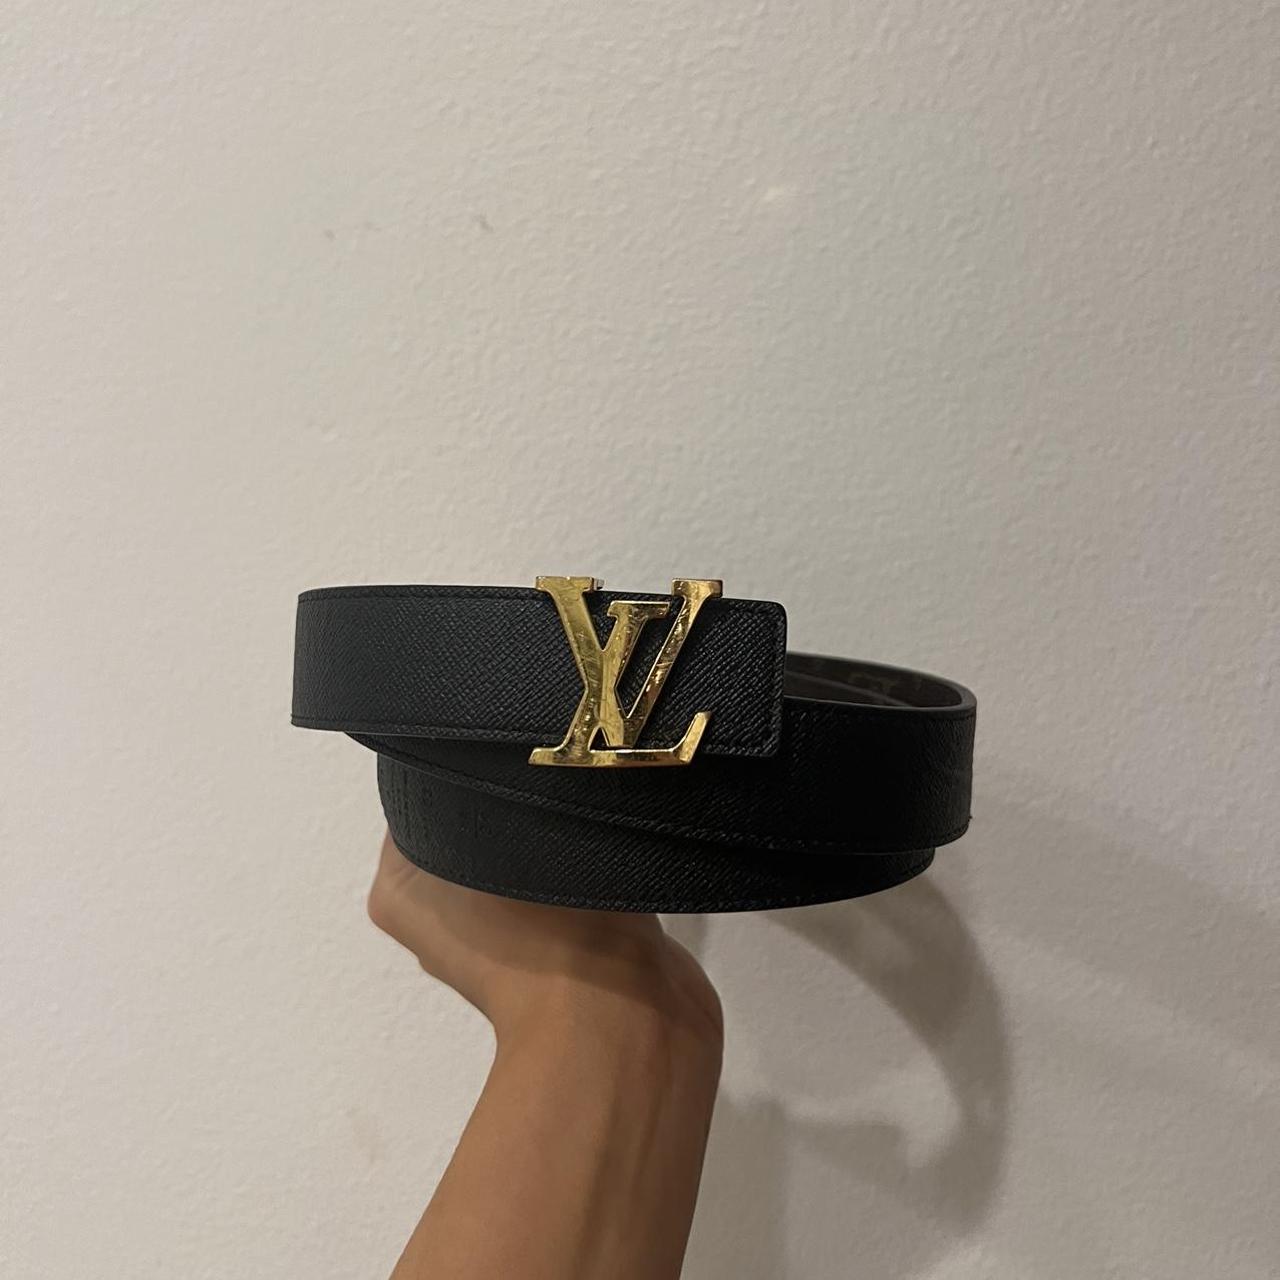 Authentic Louis Vuitton reversible belt - Depop